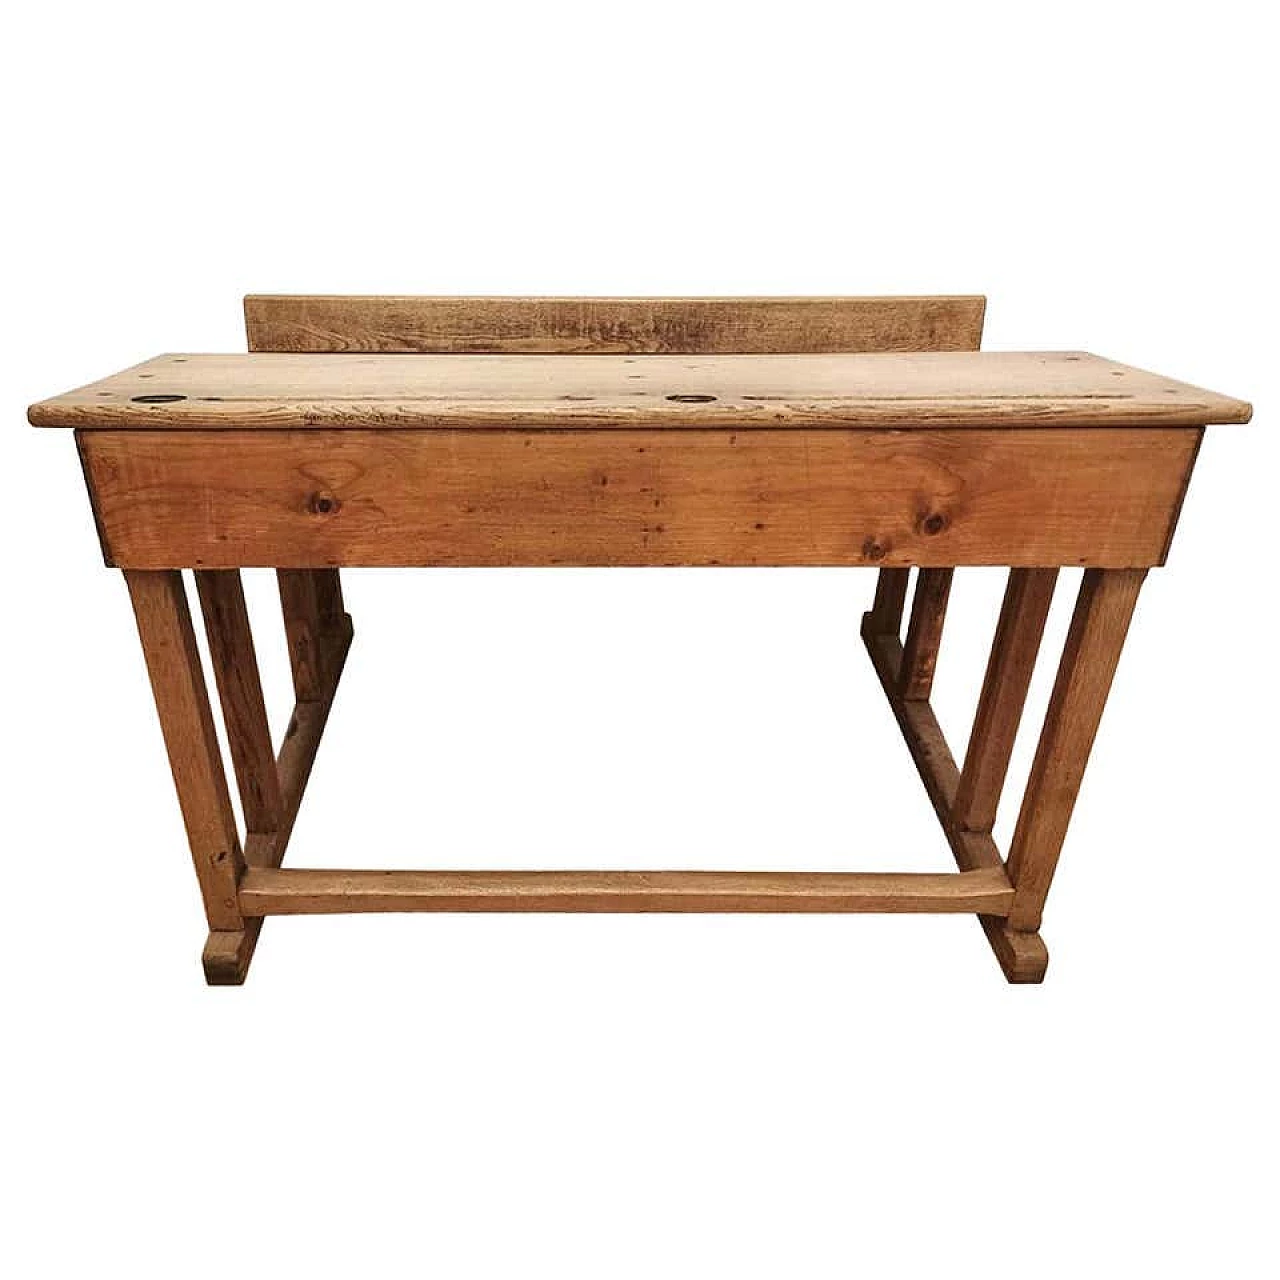 School desk in solid oak, 19th century 1184147